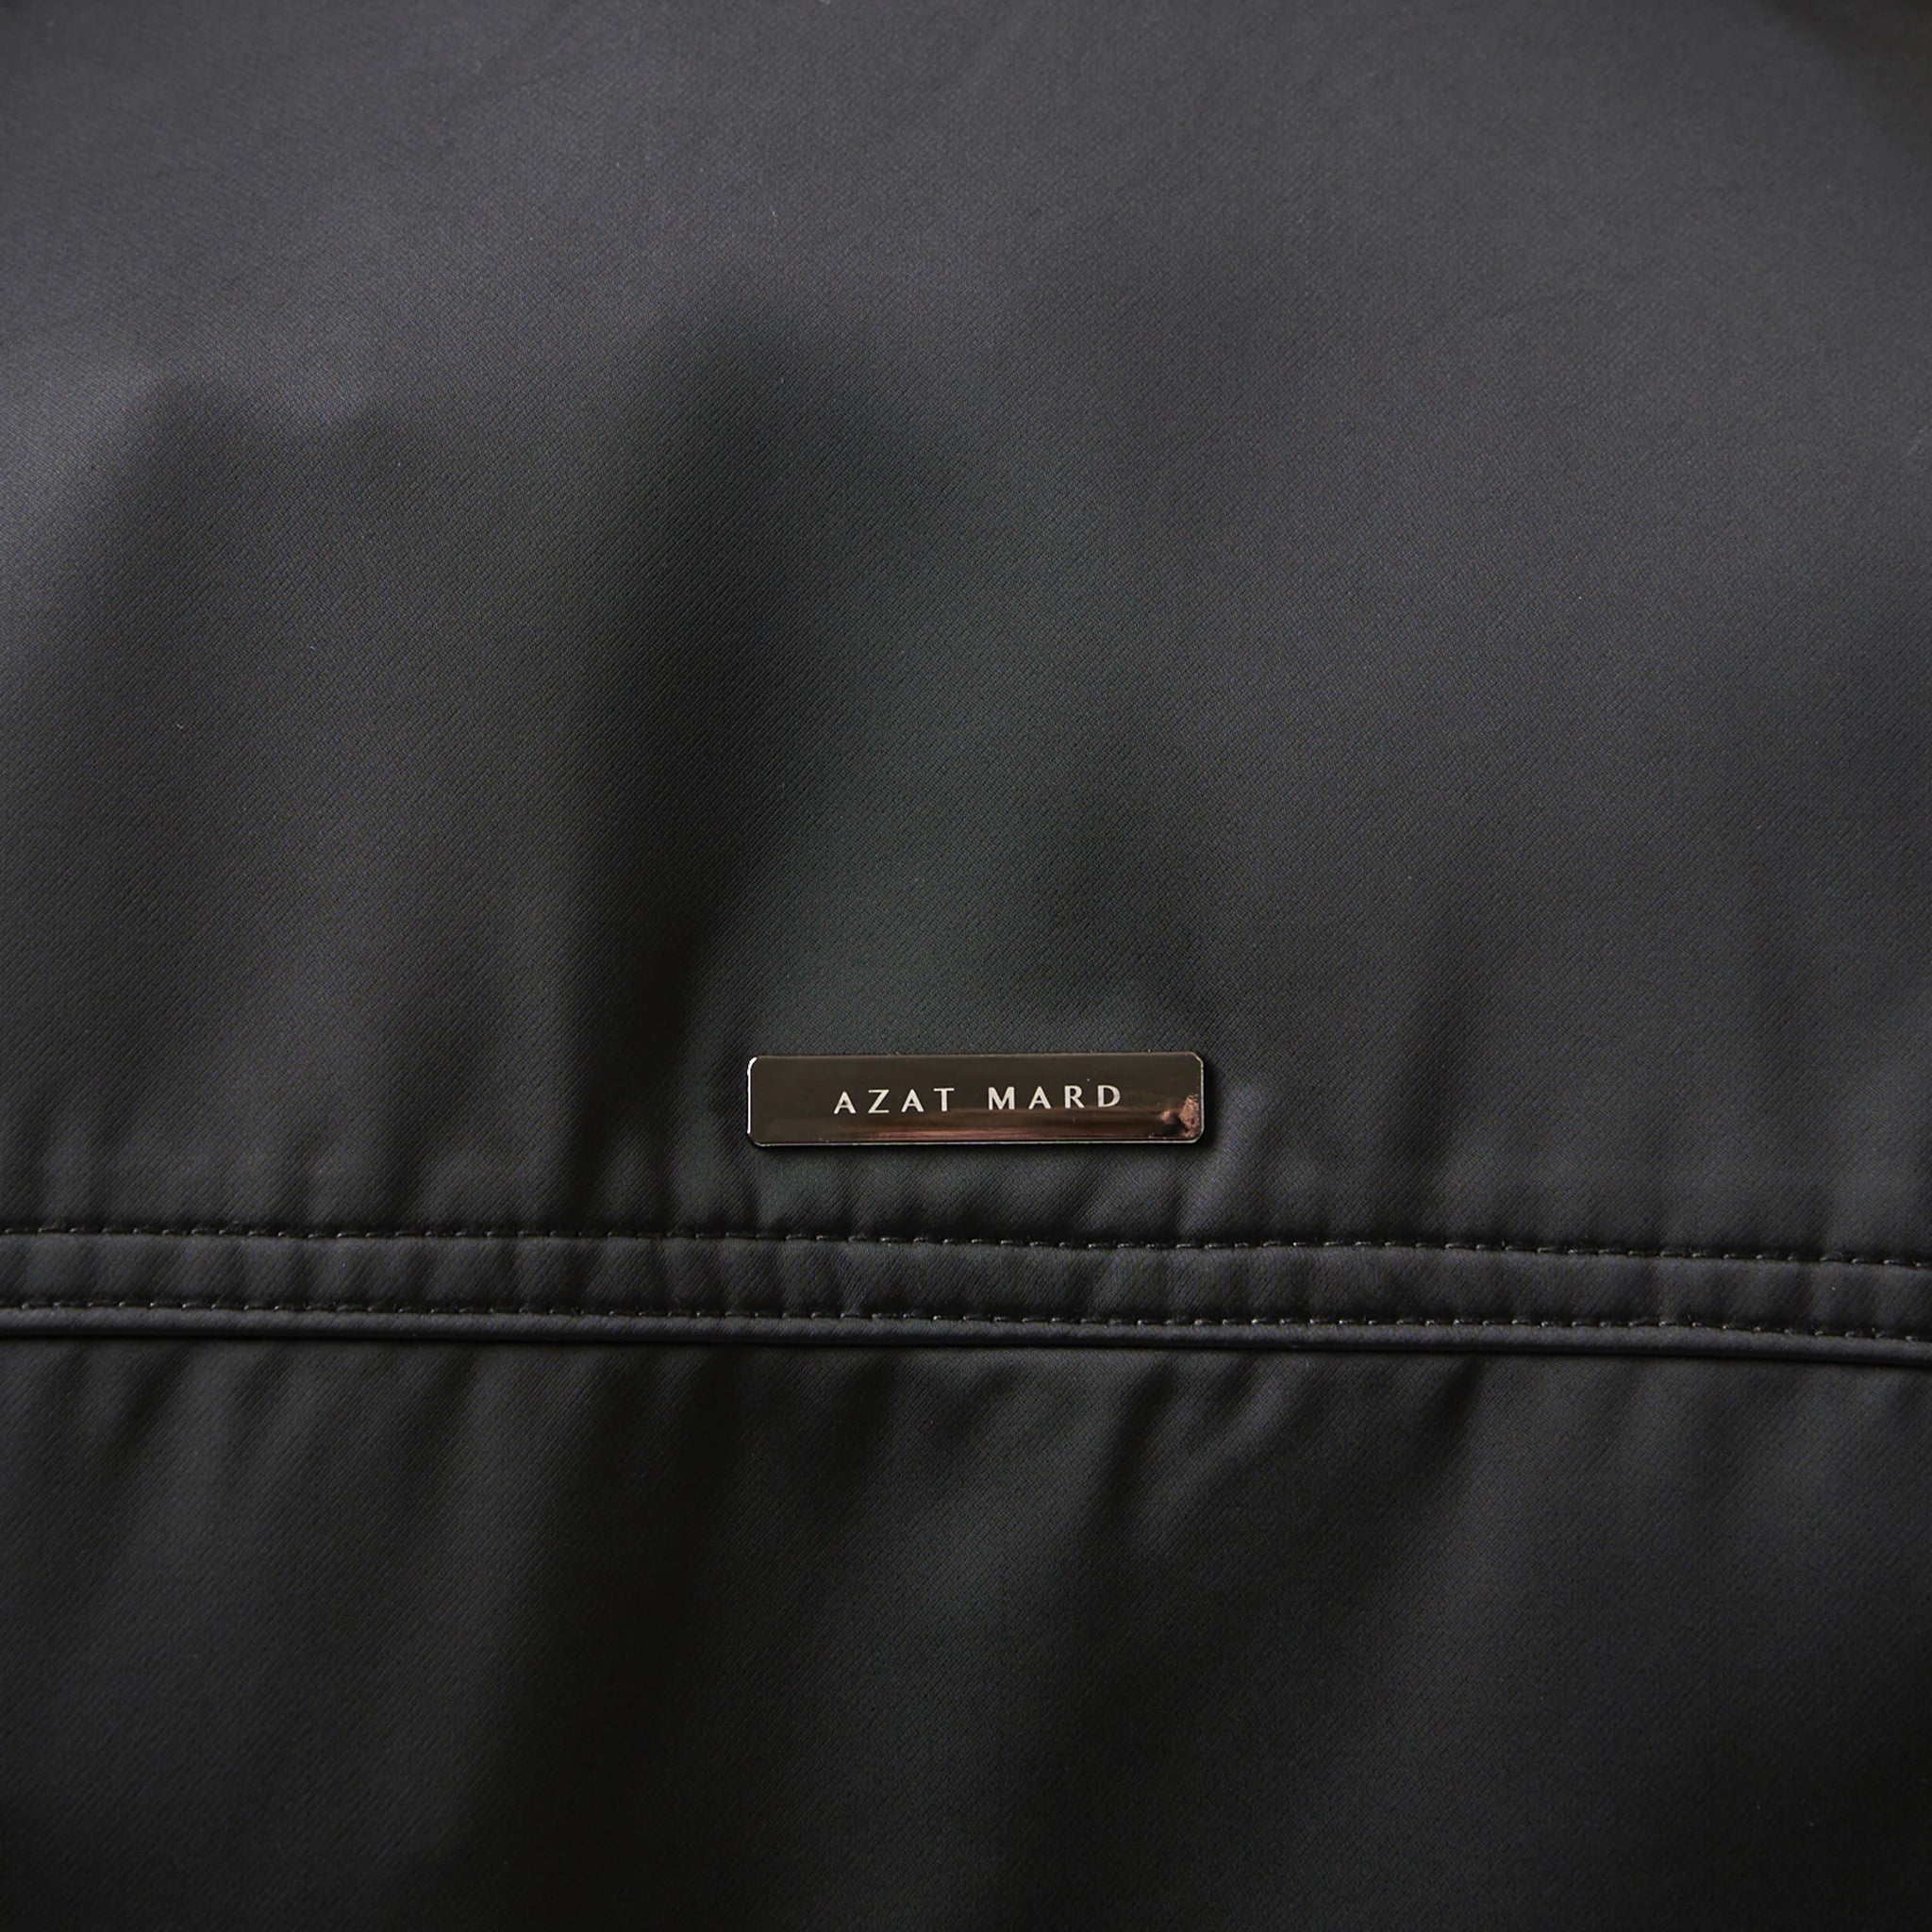 Plaque view of Azat Mard Nylon Les Gens Black Zipper Jacket